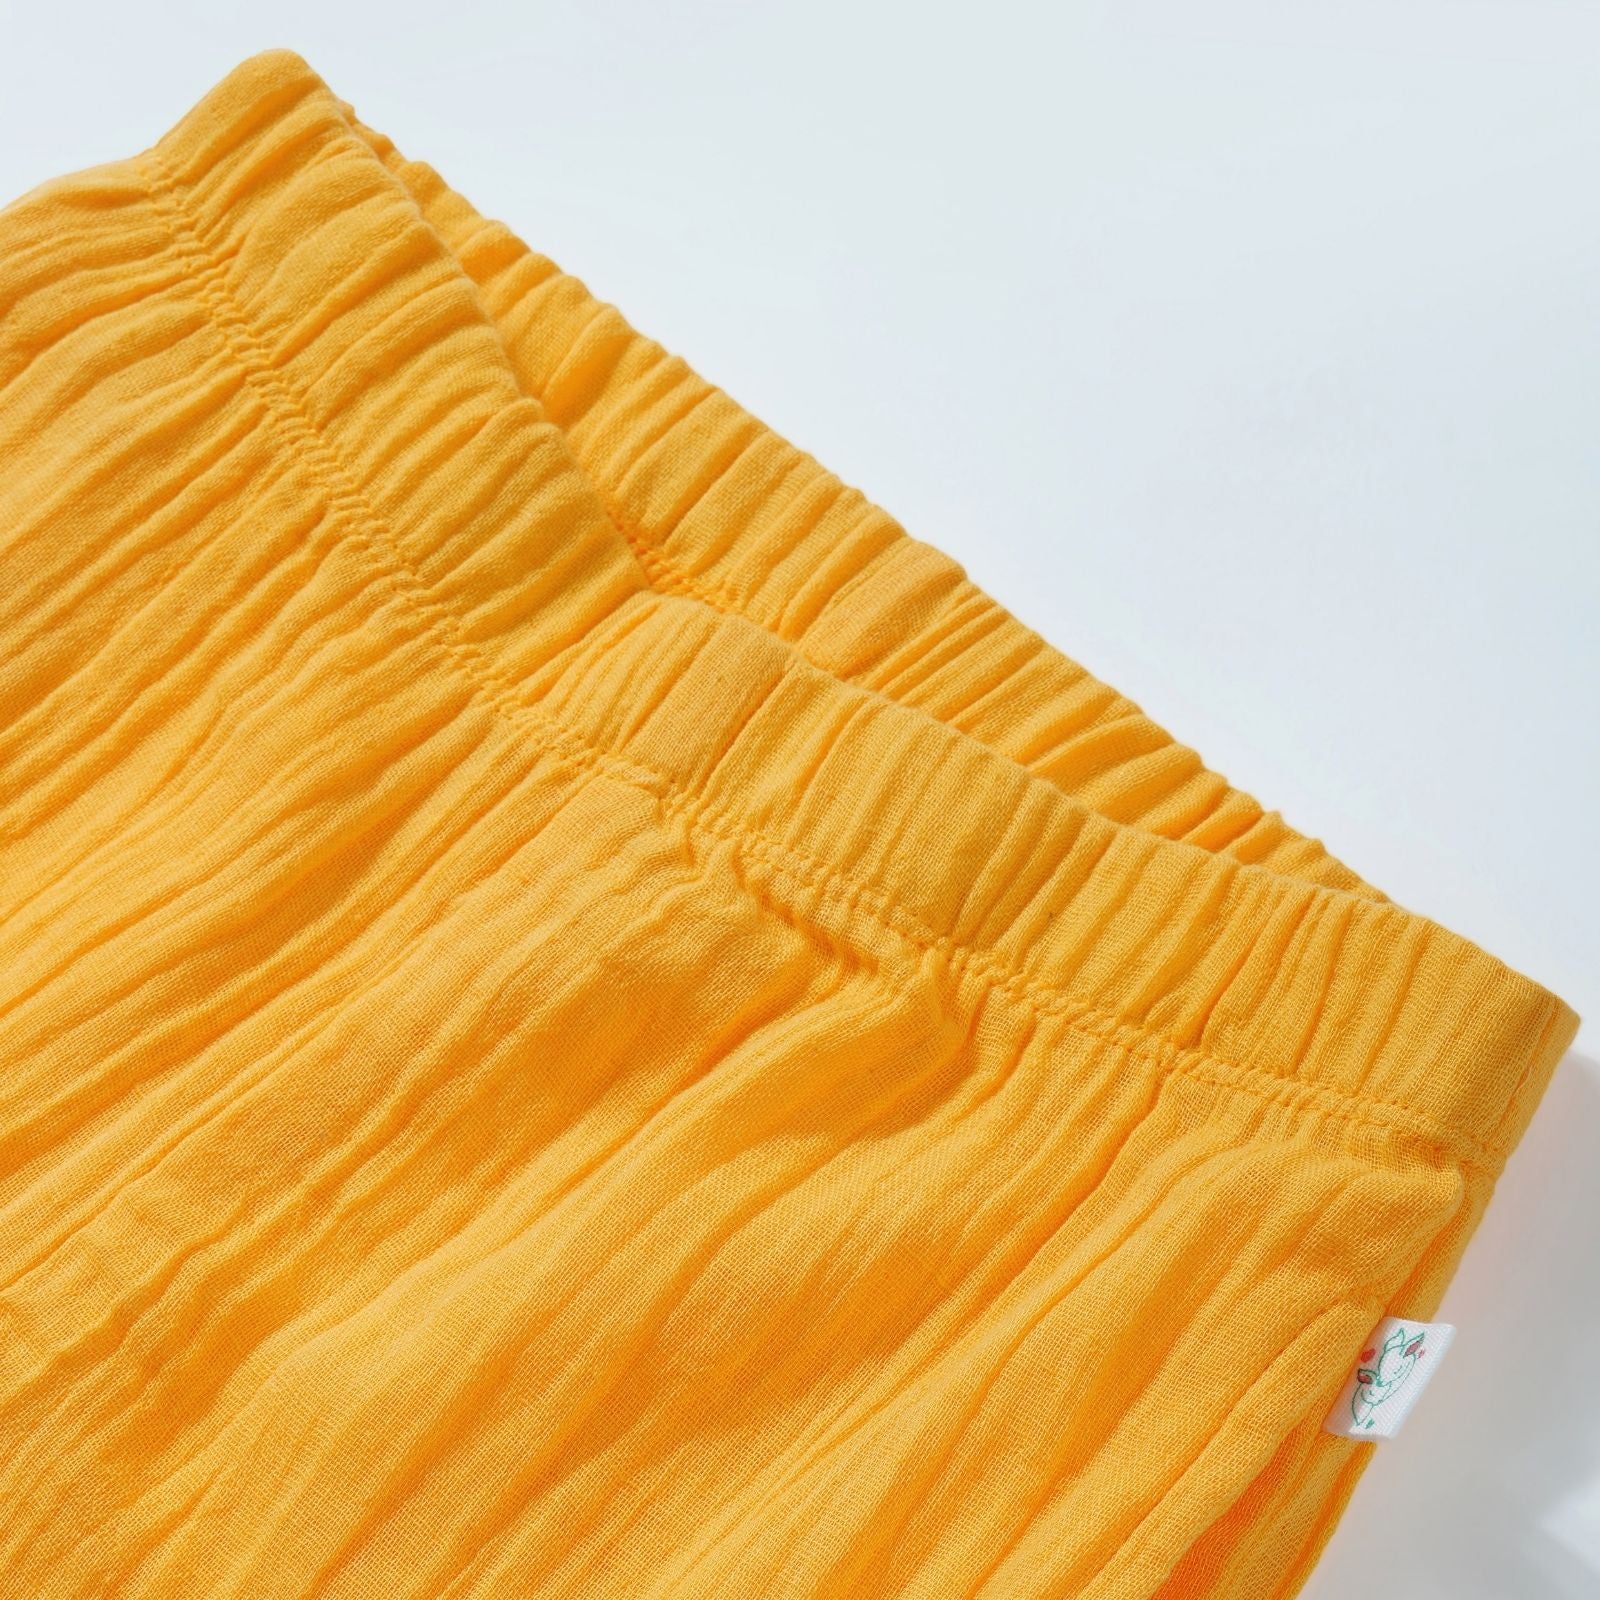 Greendeer Half Diaper Lowers - Marigold Yellow